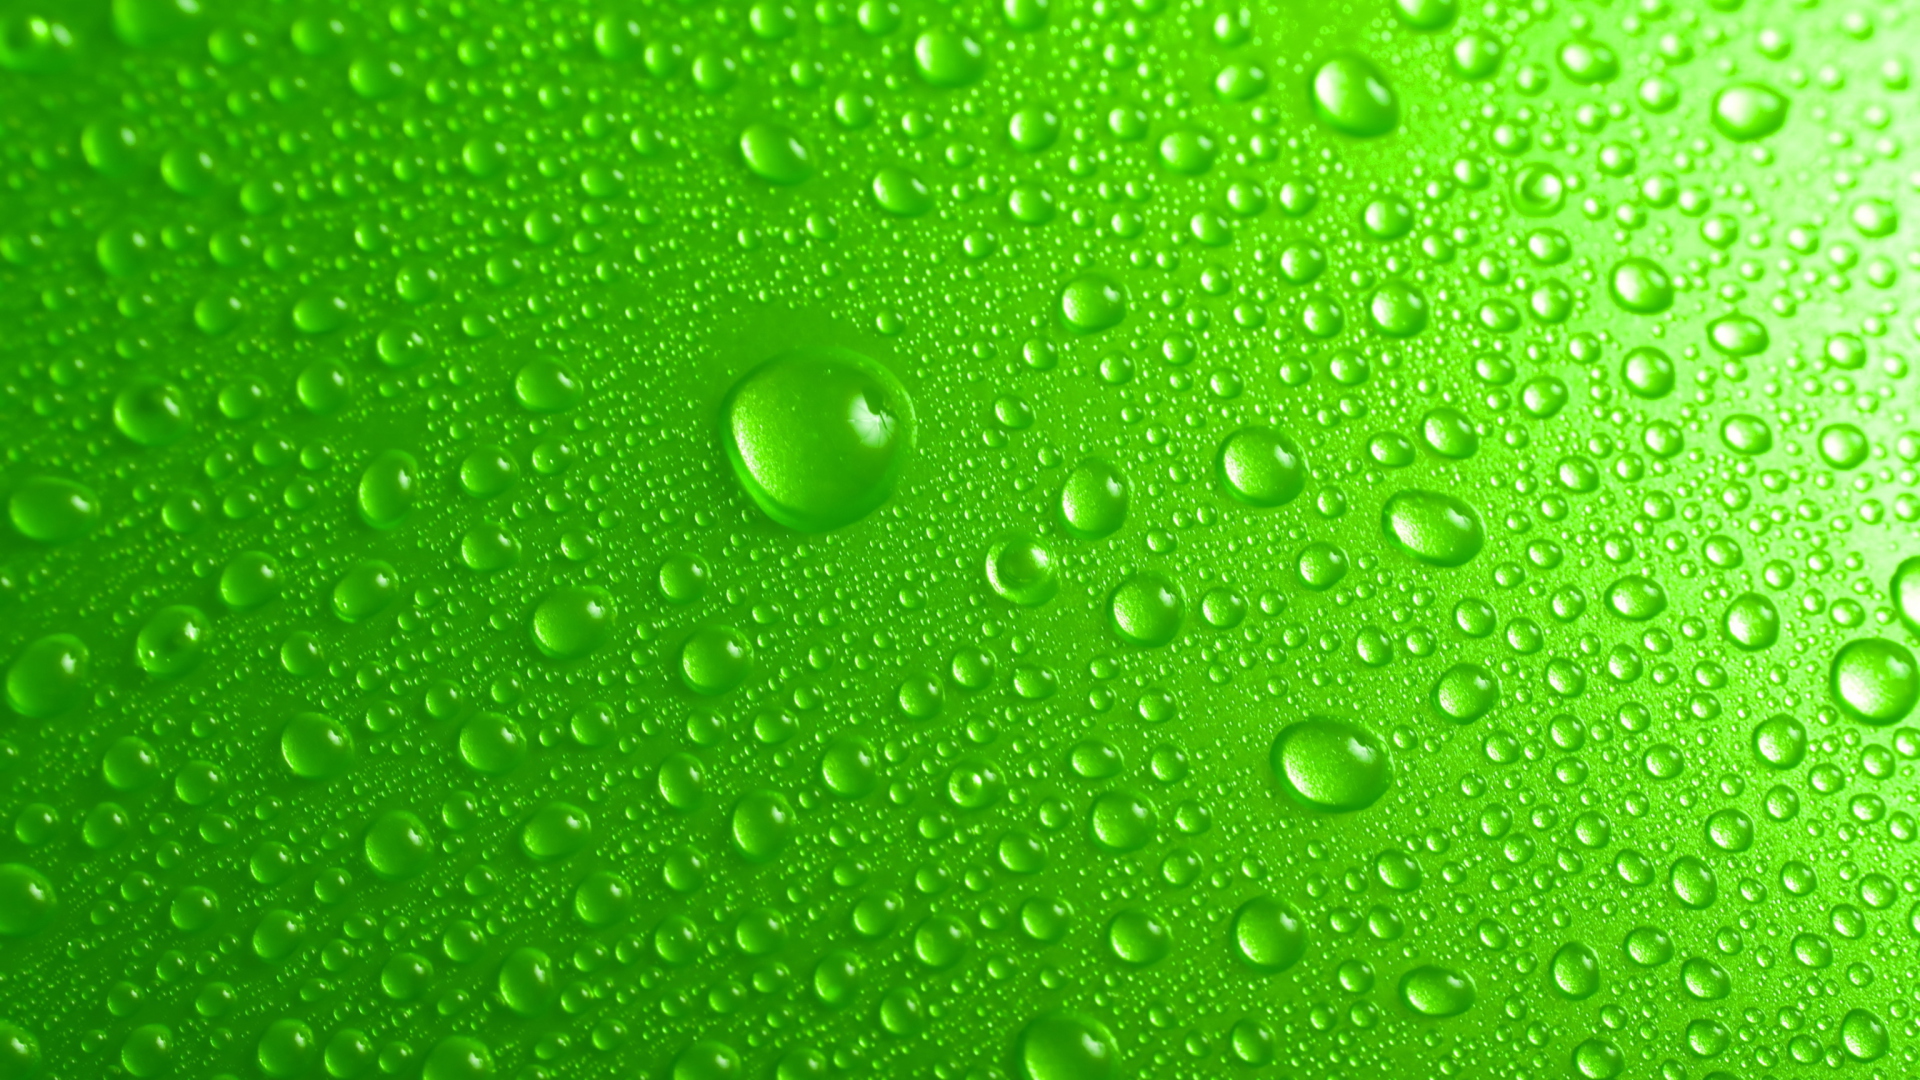 Обои Green Water Drops 1920x1080